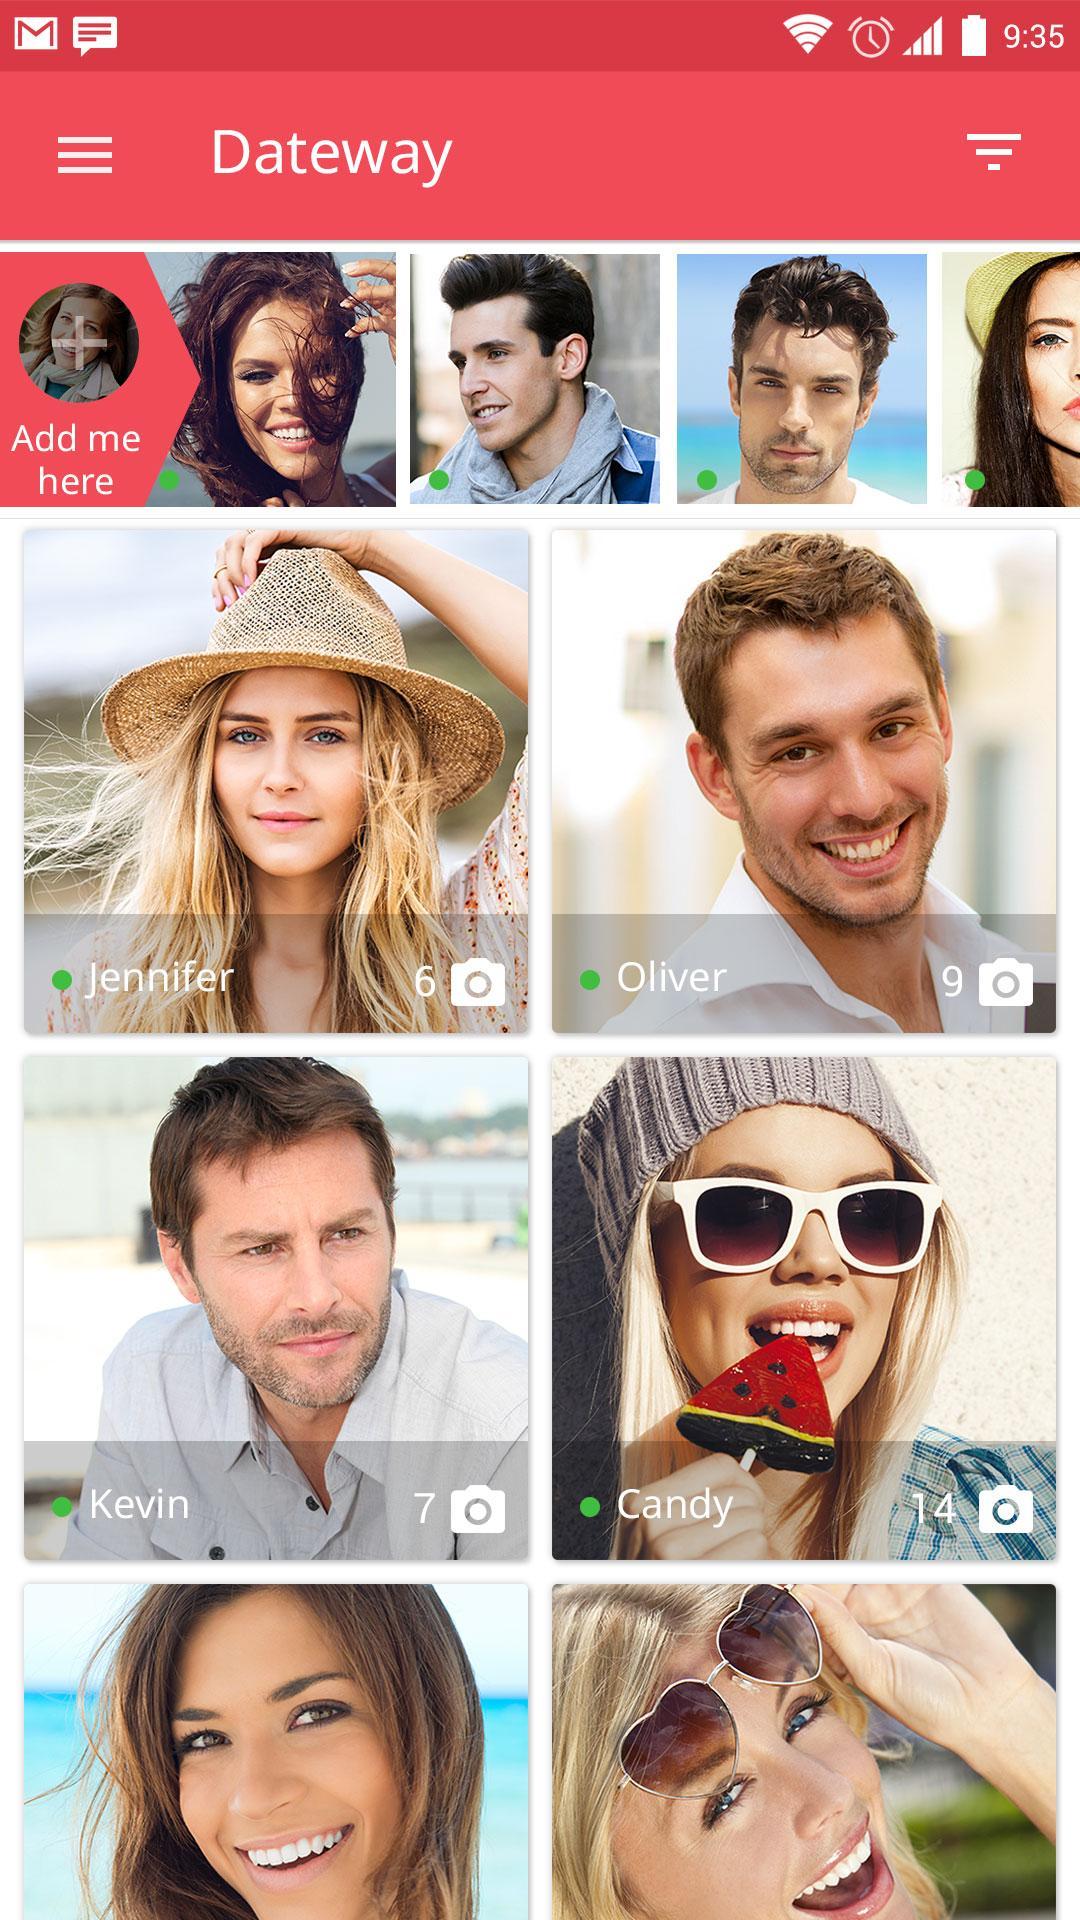 Date Way Dating App to Chat, Flirt & Meet Singles 2.8.3.1 Screenshot 1